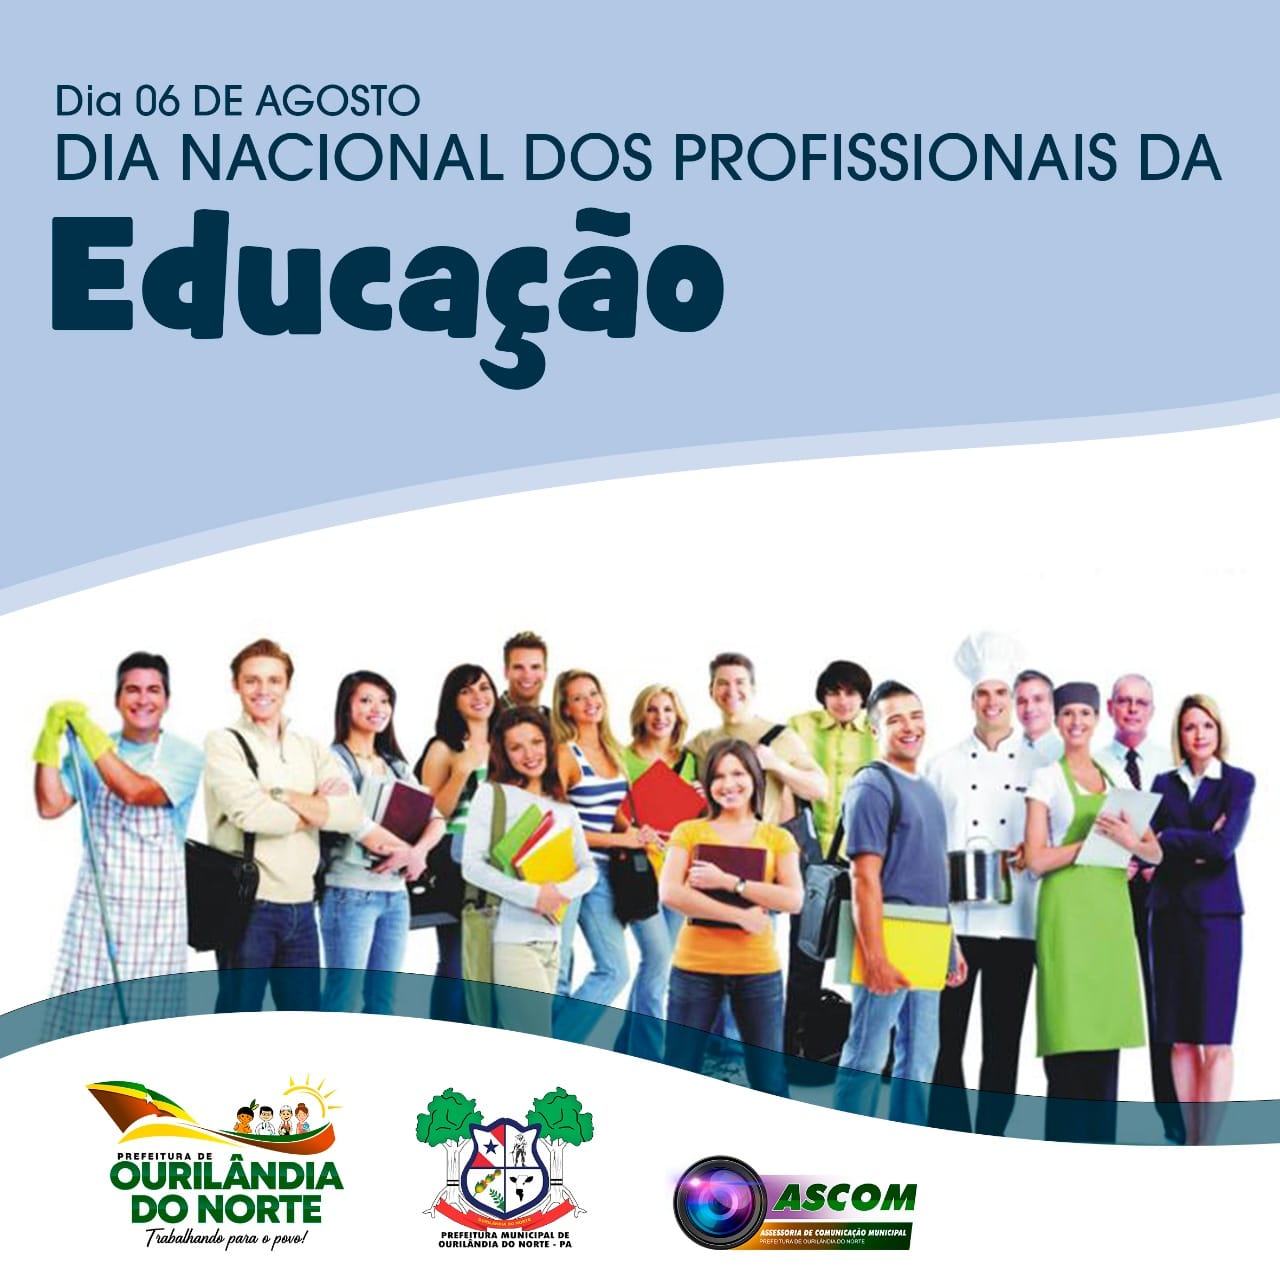 6 de agosto: Dia Nacional dos Profissionais da Educação